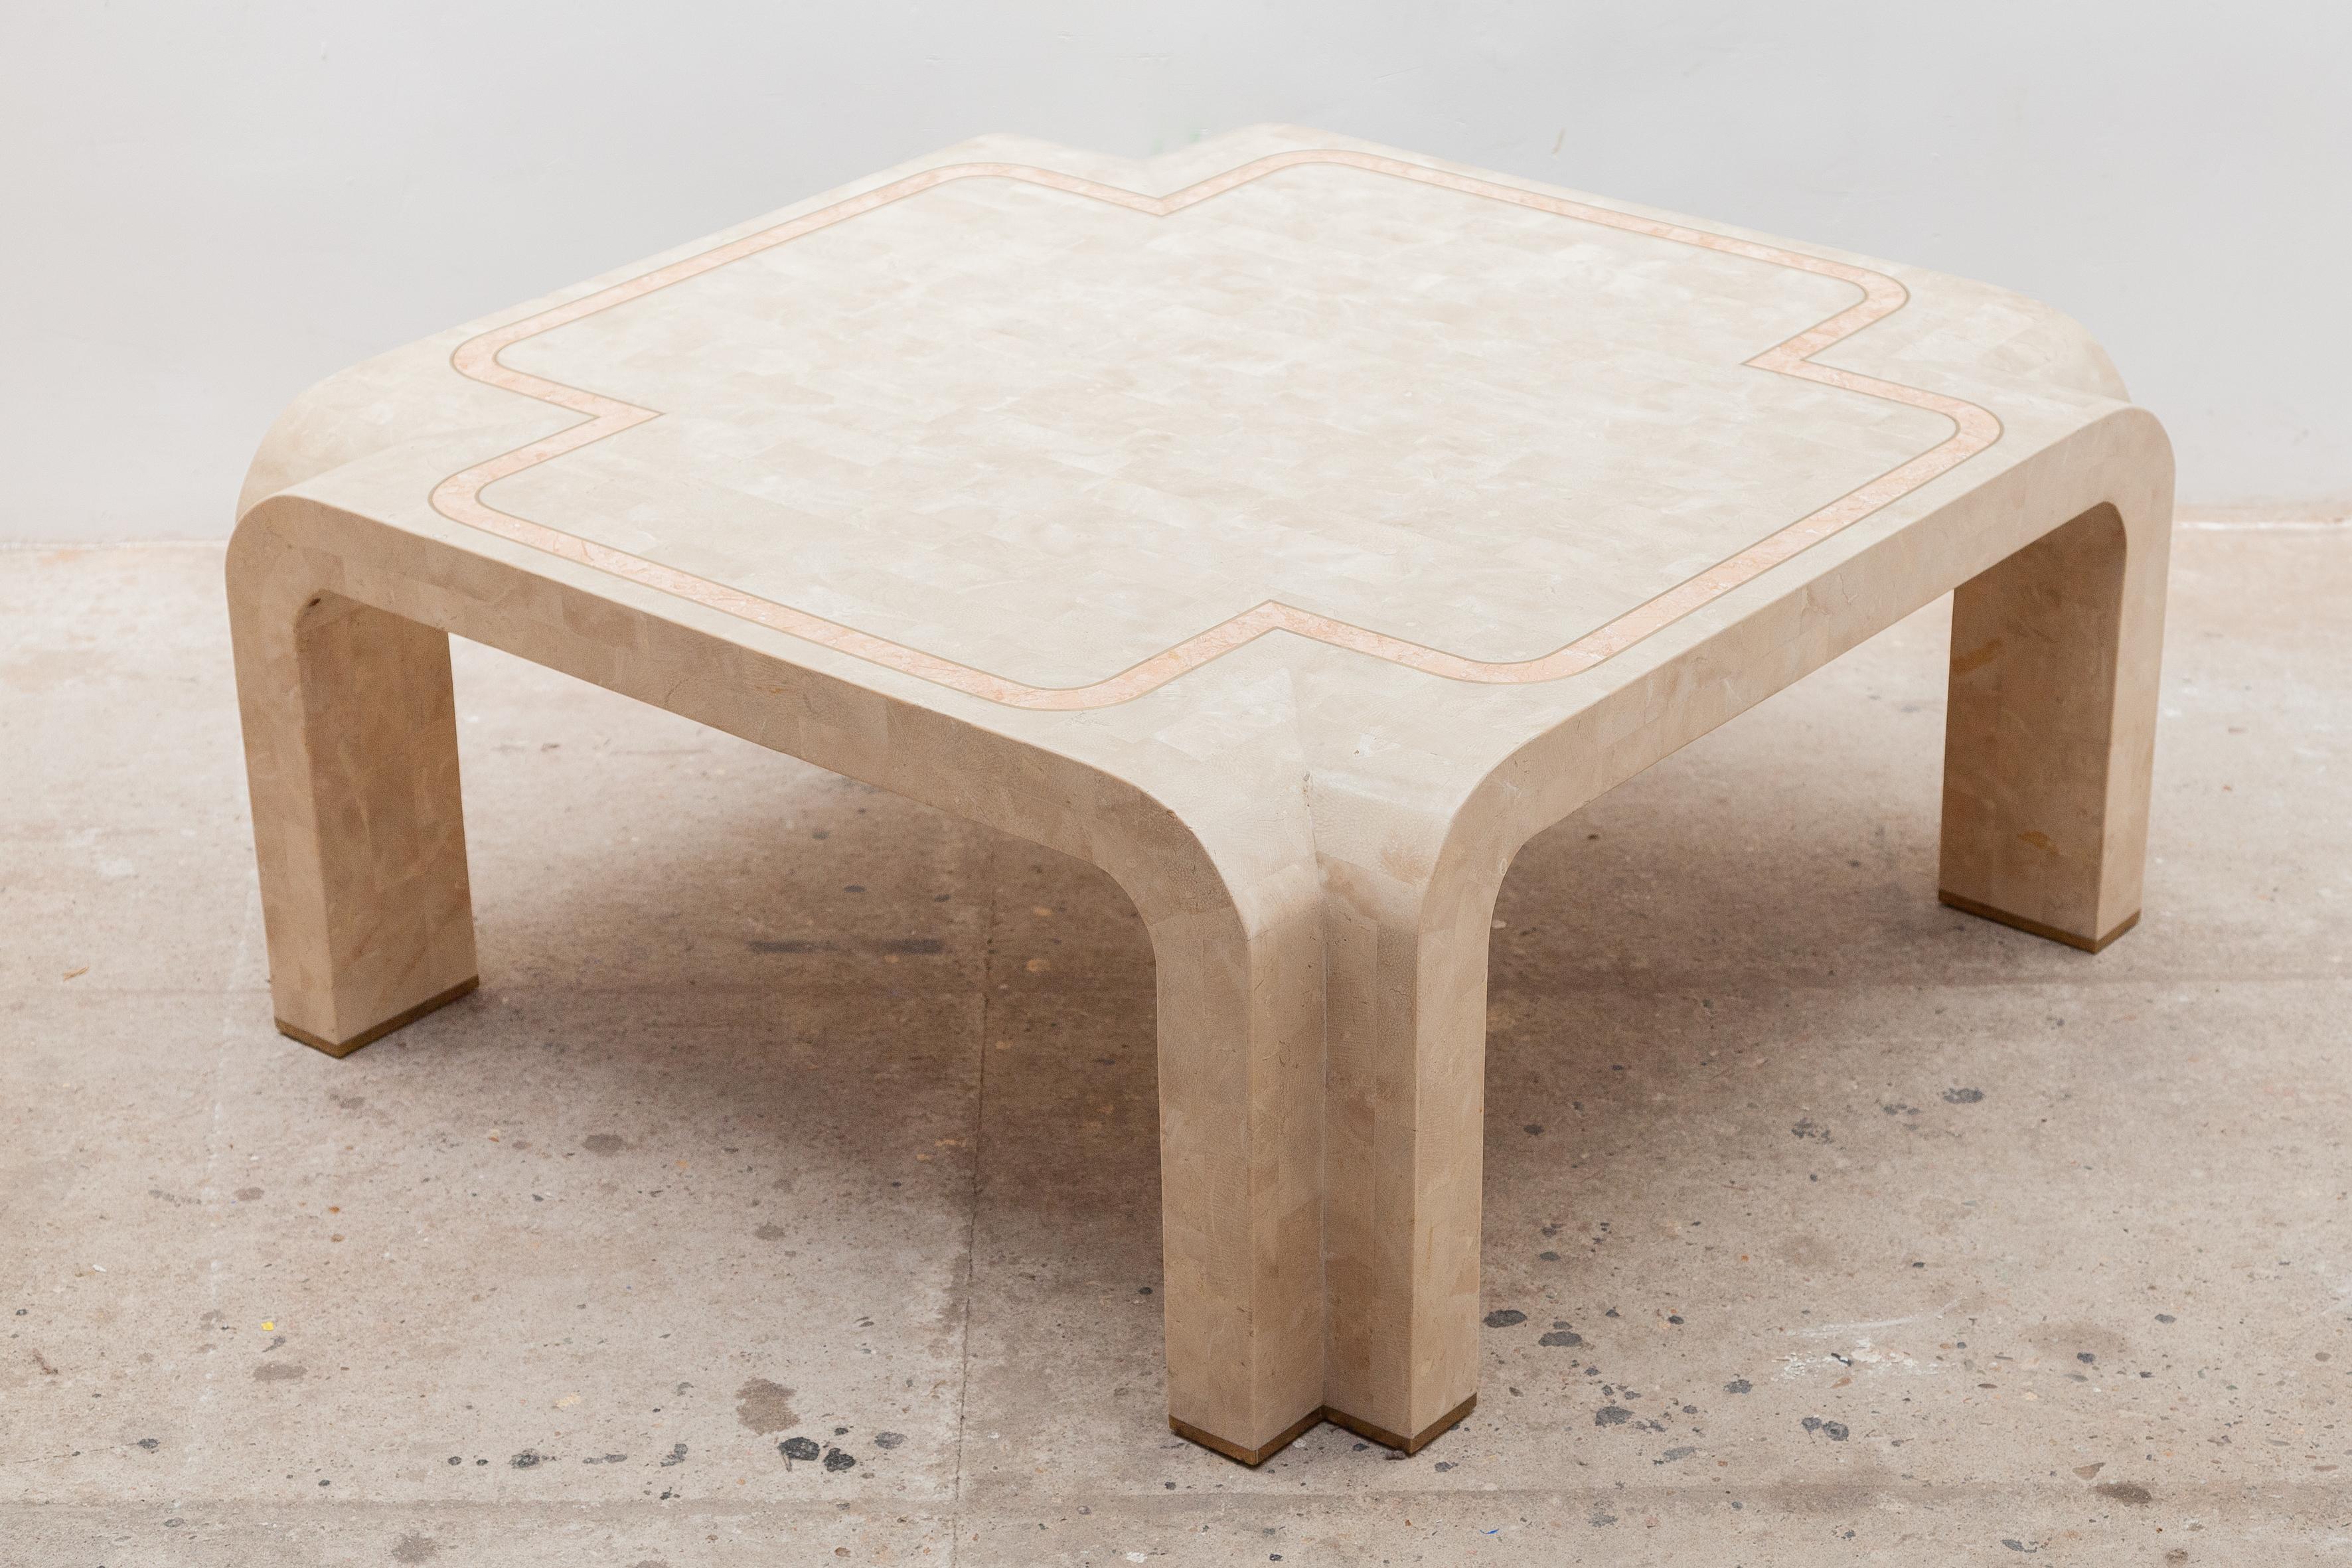 L'artisanat expérimental de nouveaux matériaux et techniques en bois avec un composite de pierre marbrée plâtre et une touche finale dans une ligne rose encadrée qui le rend approprié pour décorer la table basse dans un intérieur moderne ainsi que